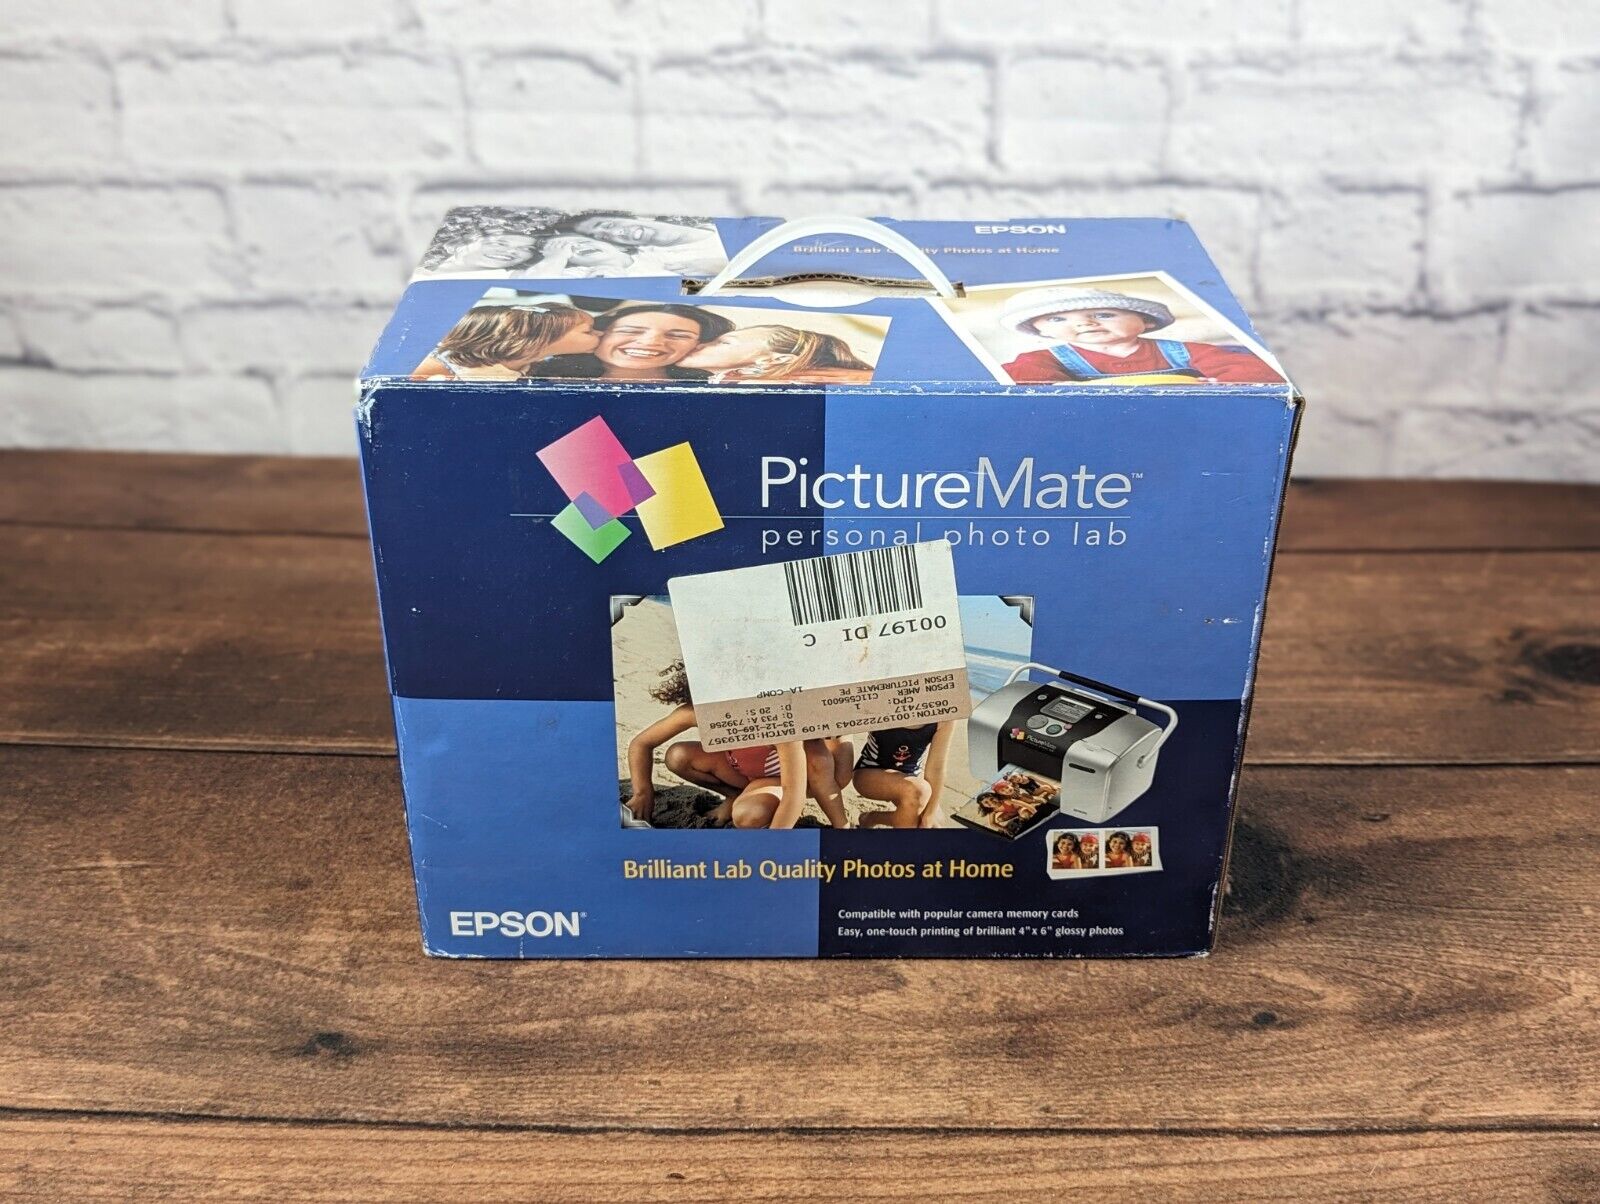 New Open Box Epson PictureMate Personal Photo Lab Printer B271A